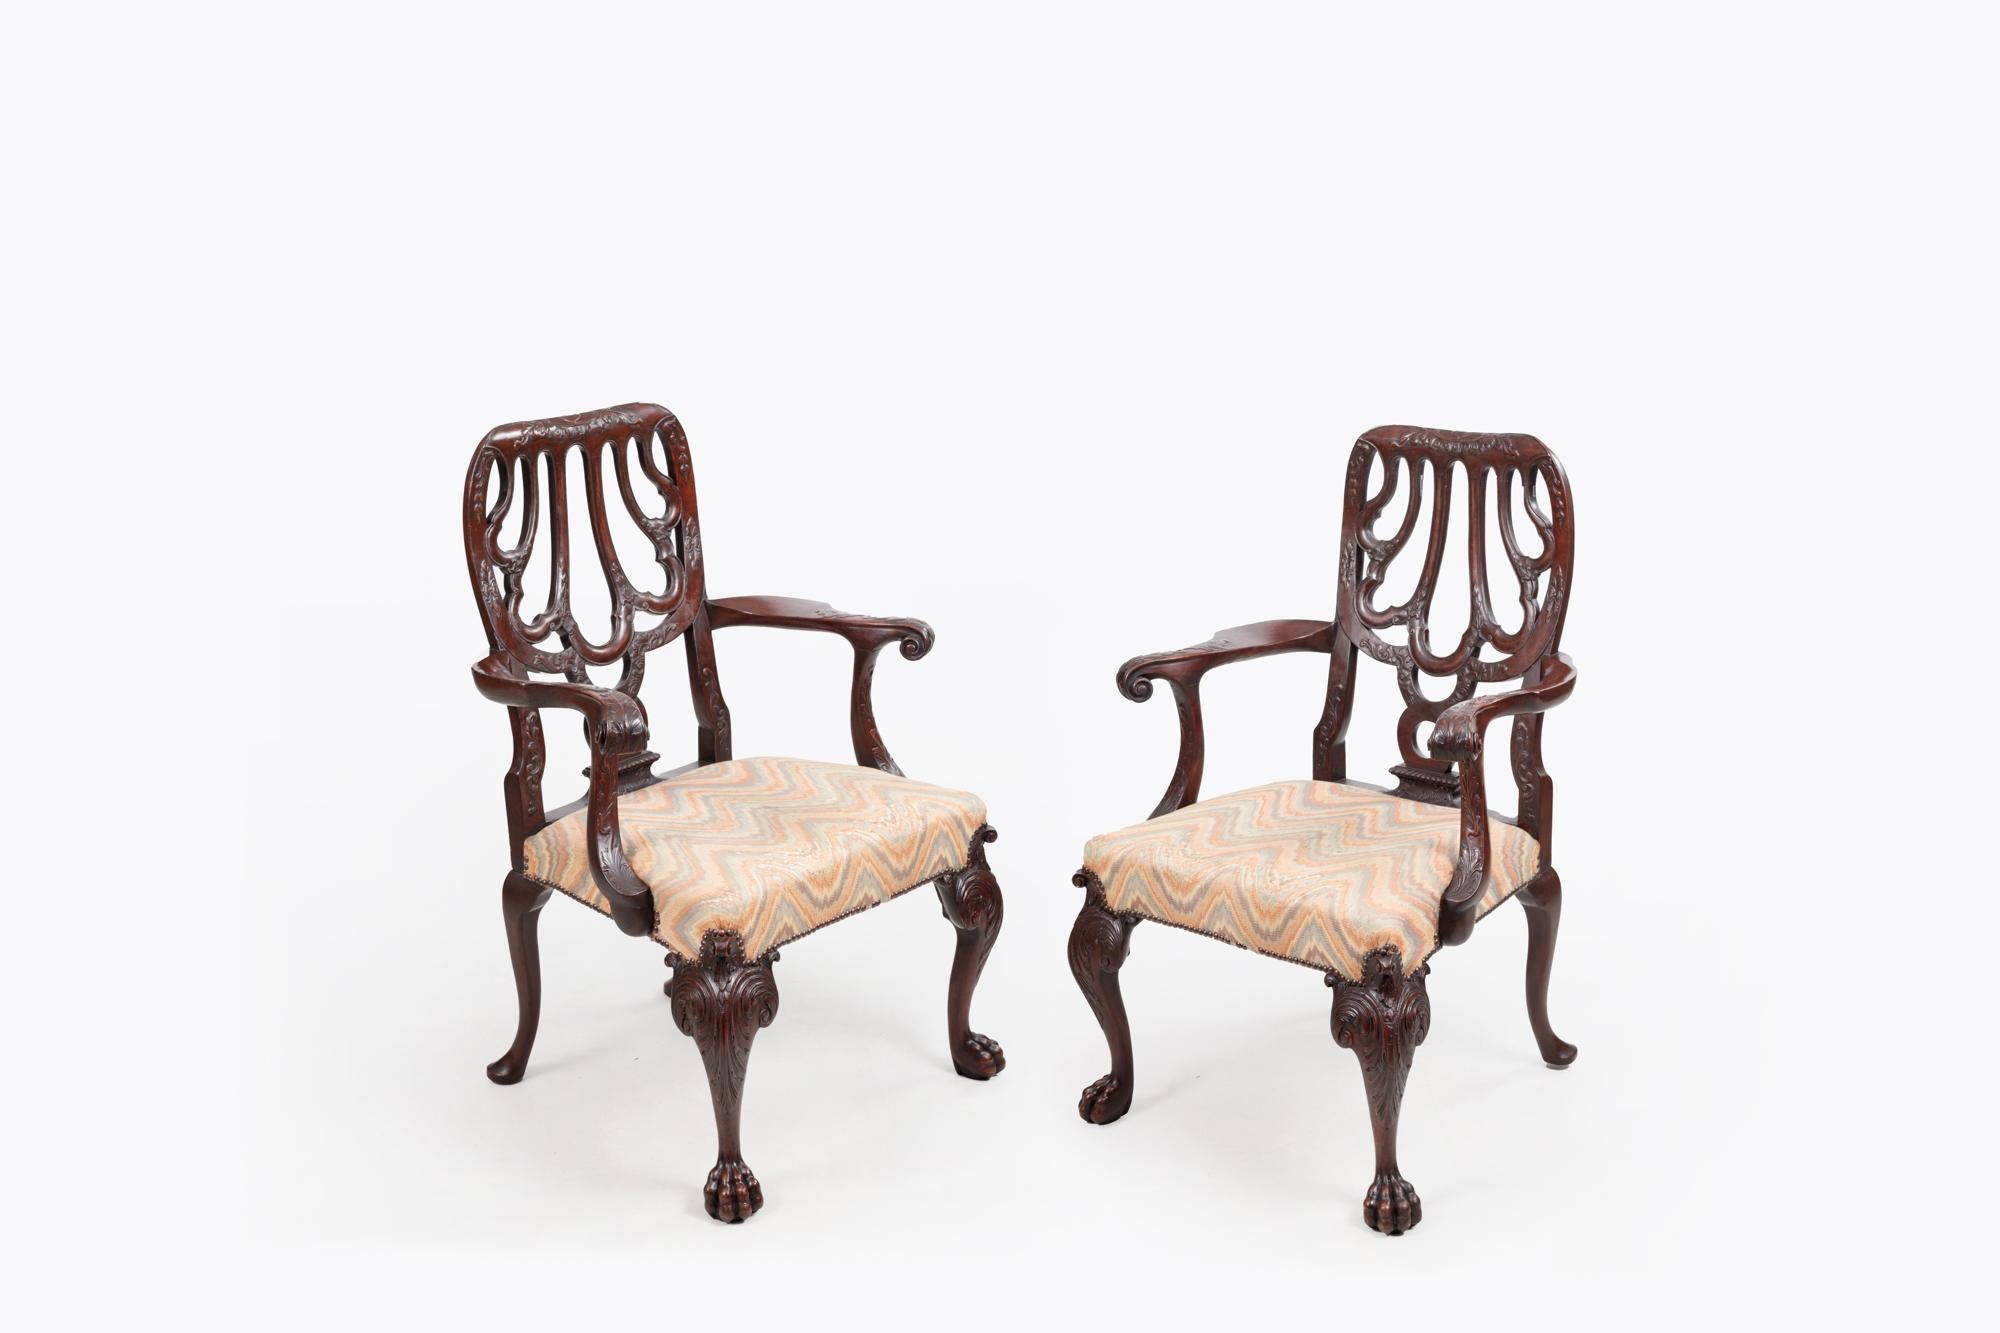 Paire de fauteuils du XVIIIe siècle d'après Giles, avec dossier à cannelures percées, motif de coquille stylisée et accoudoirs à volutes avec décor sculpté en relief. Les sièges rembourrés reposent sur des pieds cabriole sculptés à décor de rinceaux